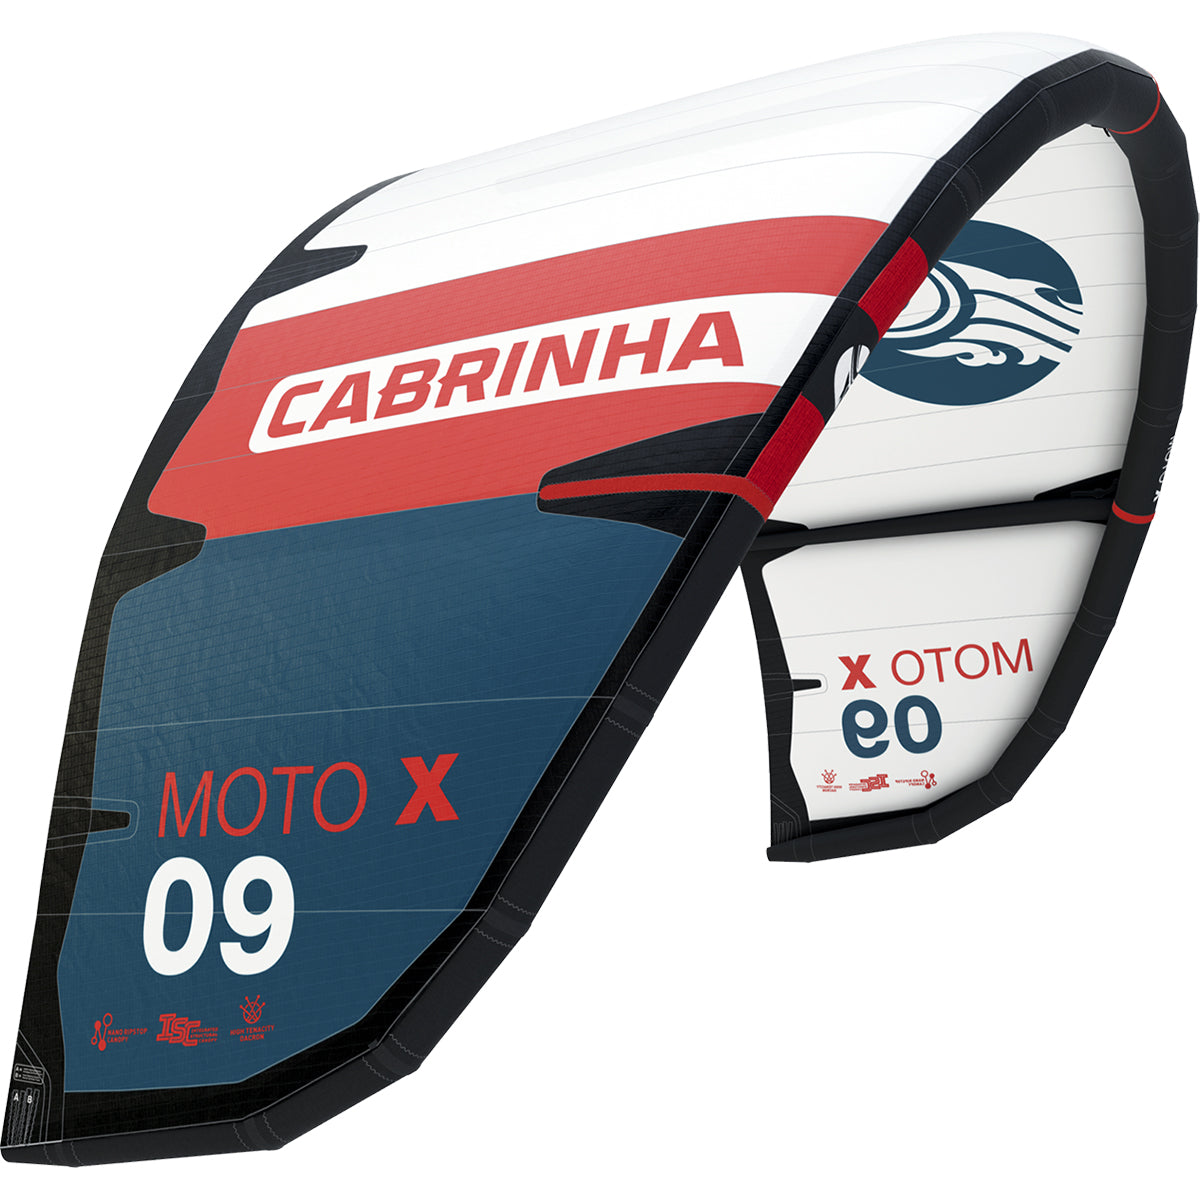 Cabrinha 24 Moto_X only – Kite